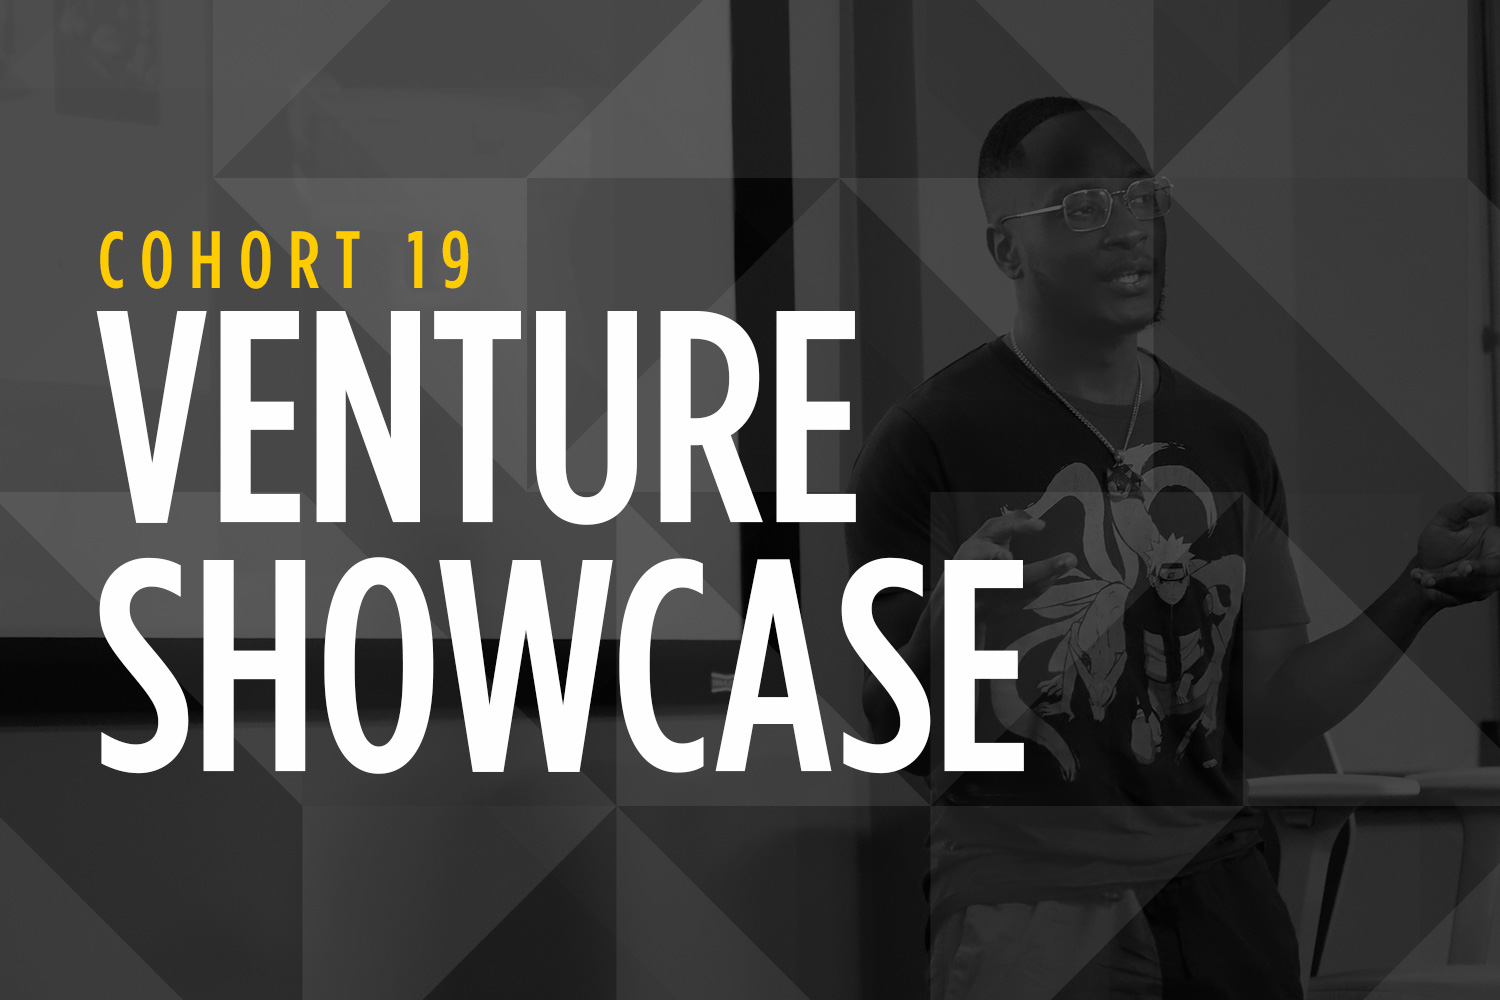 Venture Showcase for Cohort 19